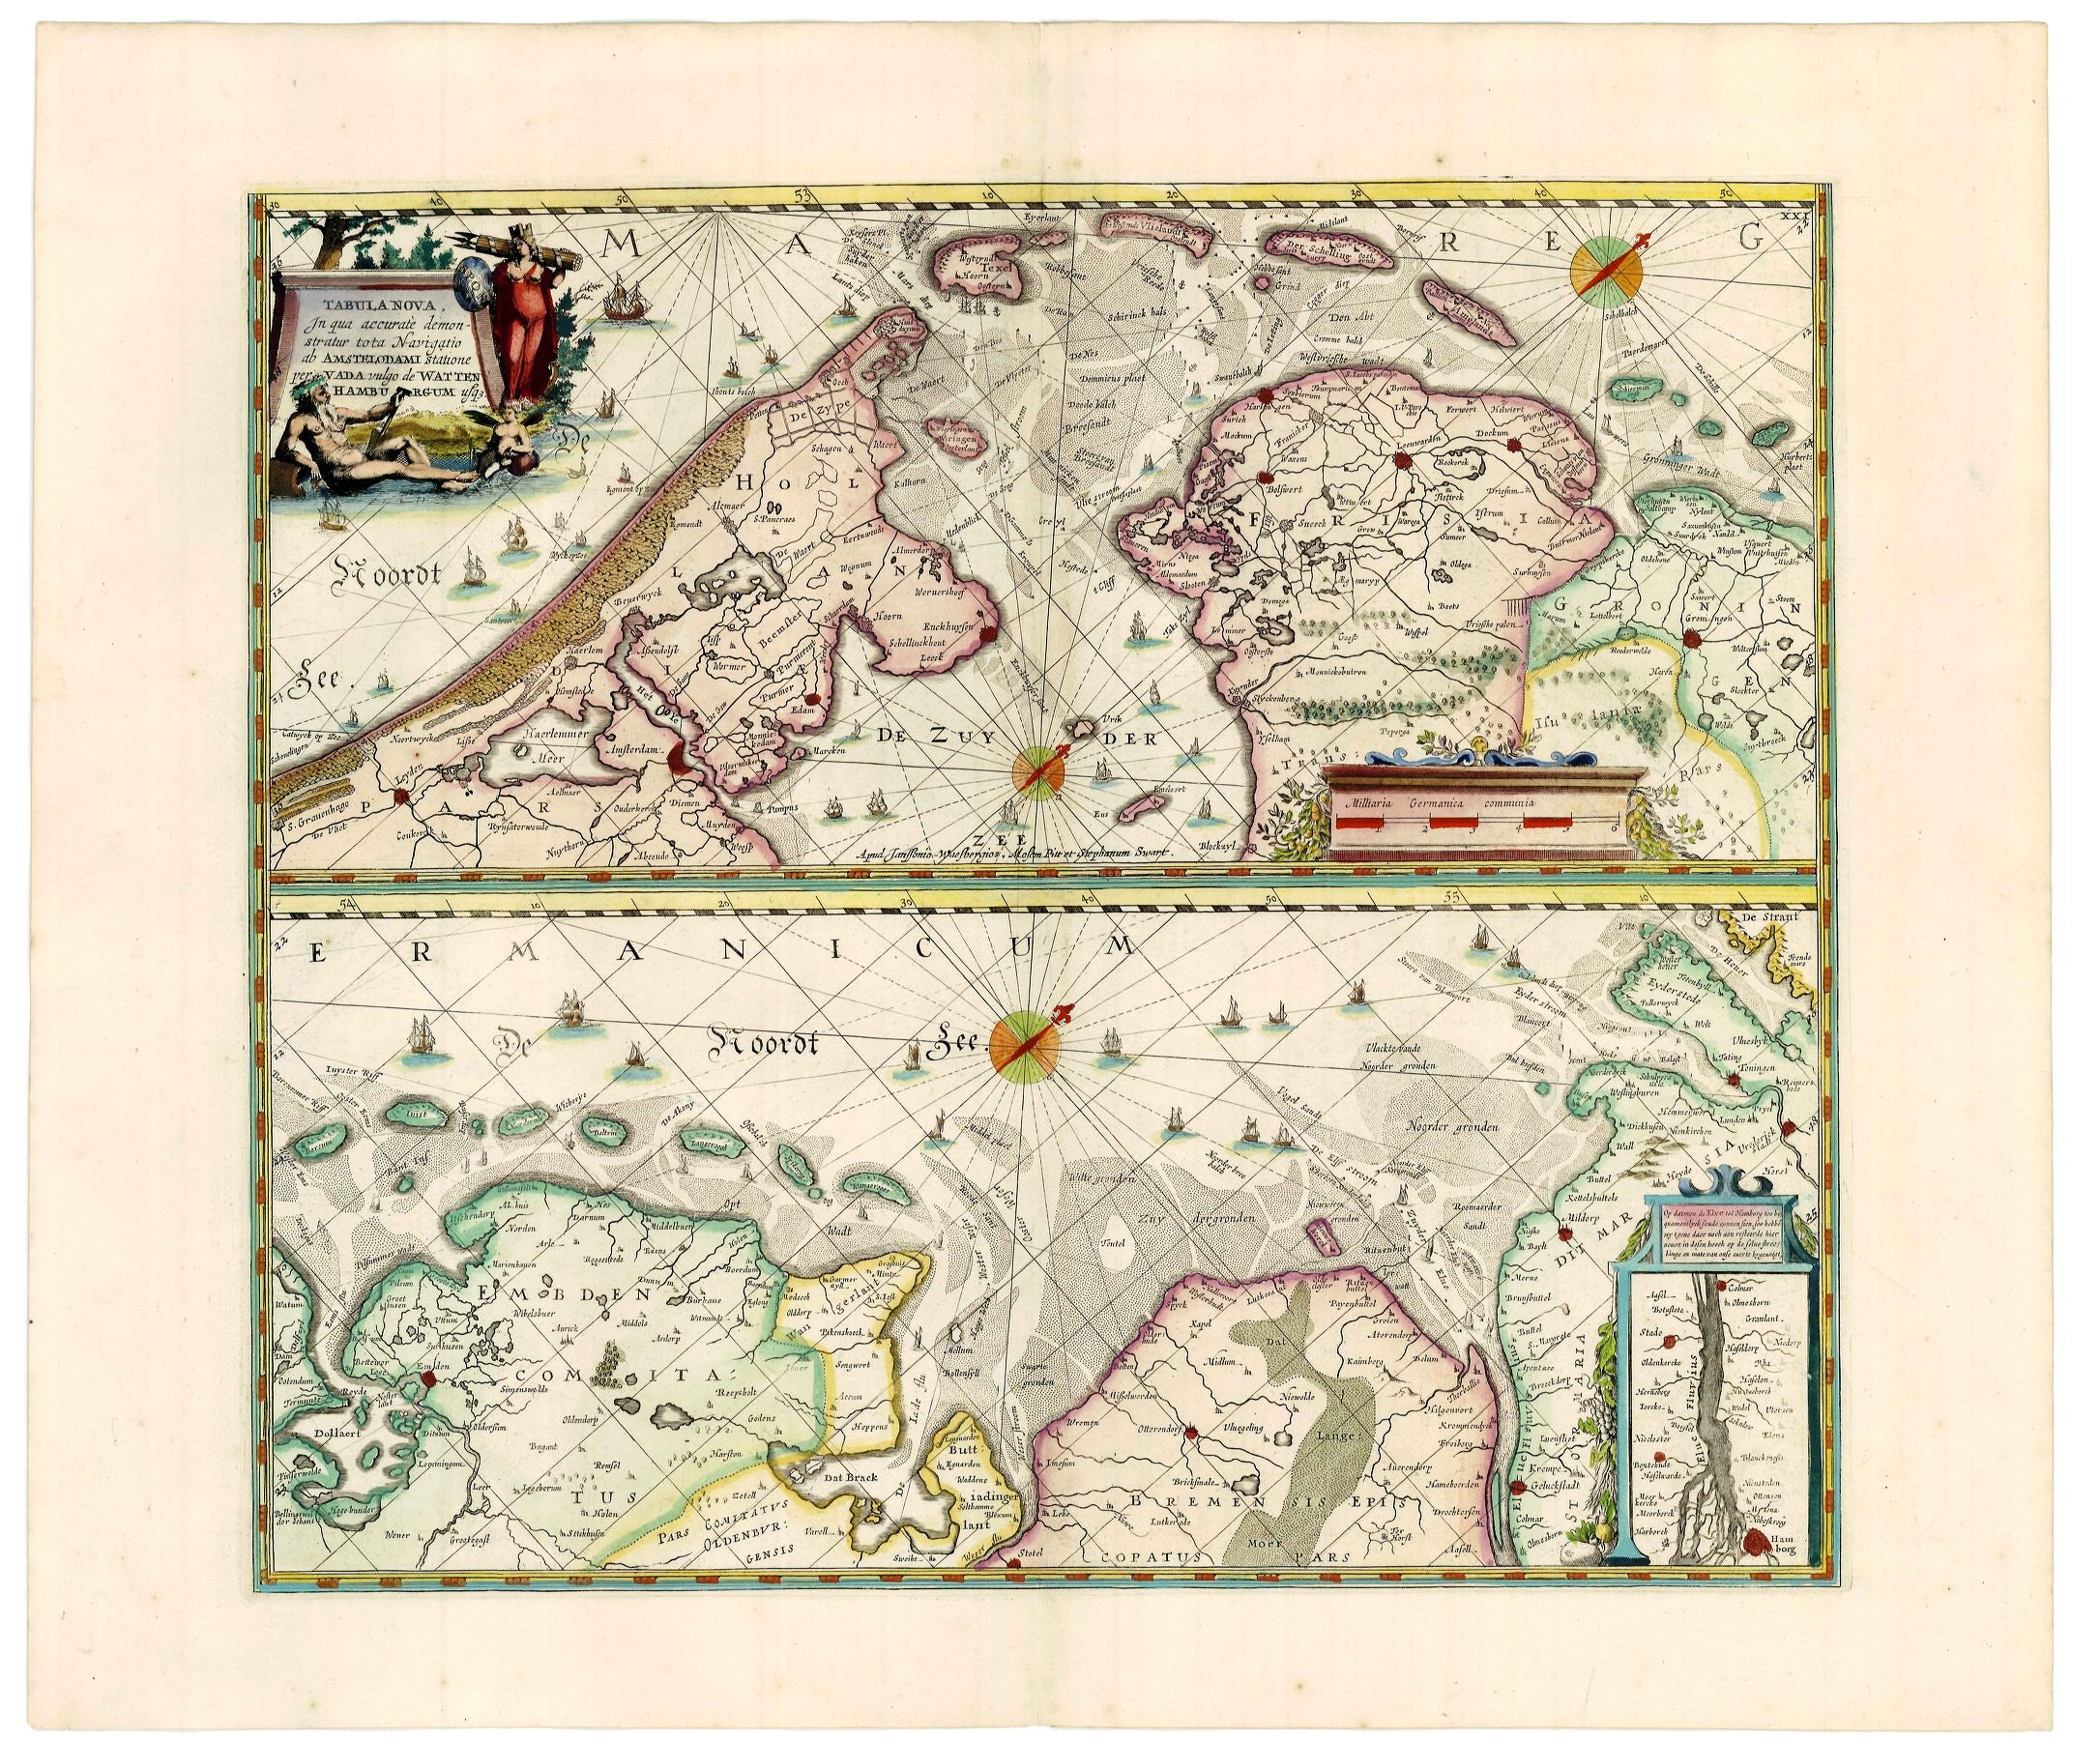 Friesisches Wattenmeer ab 1680 von Janssonius van Waesbergen, Moses Pitt, Stephen Swart